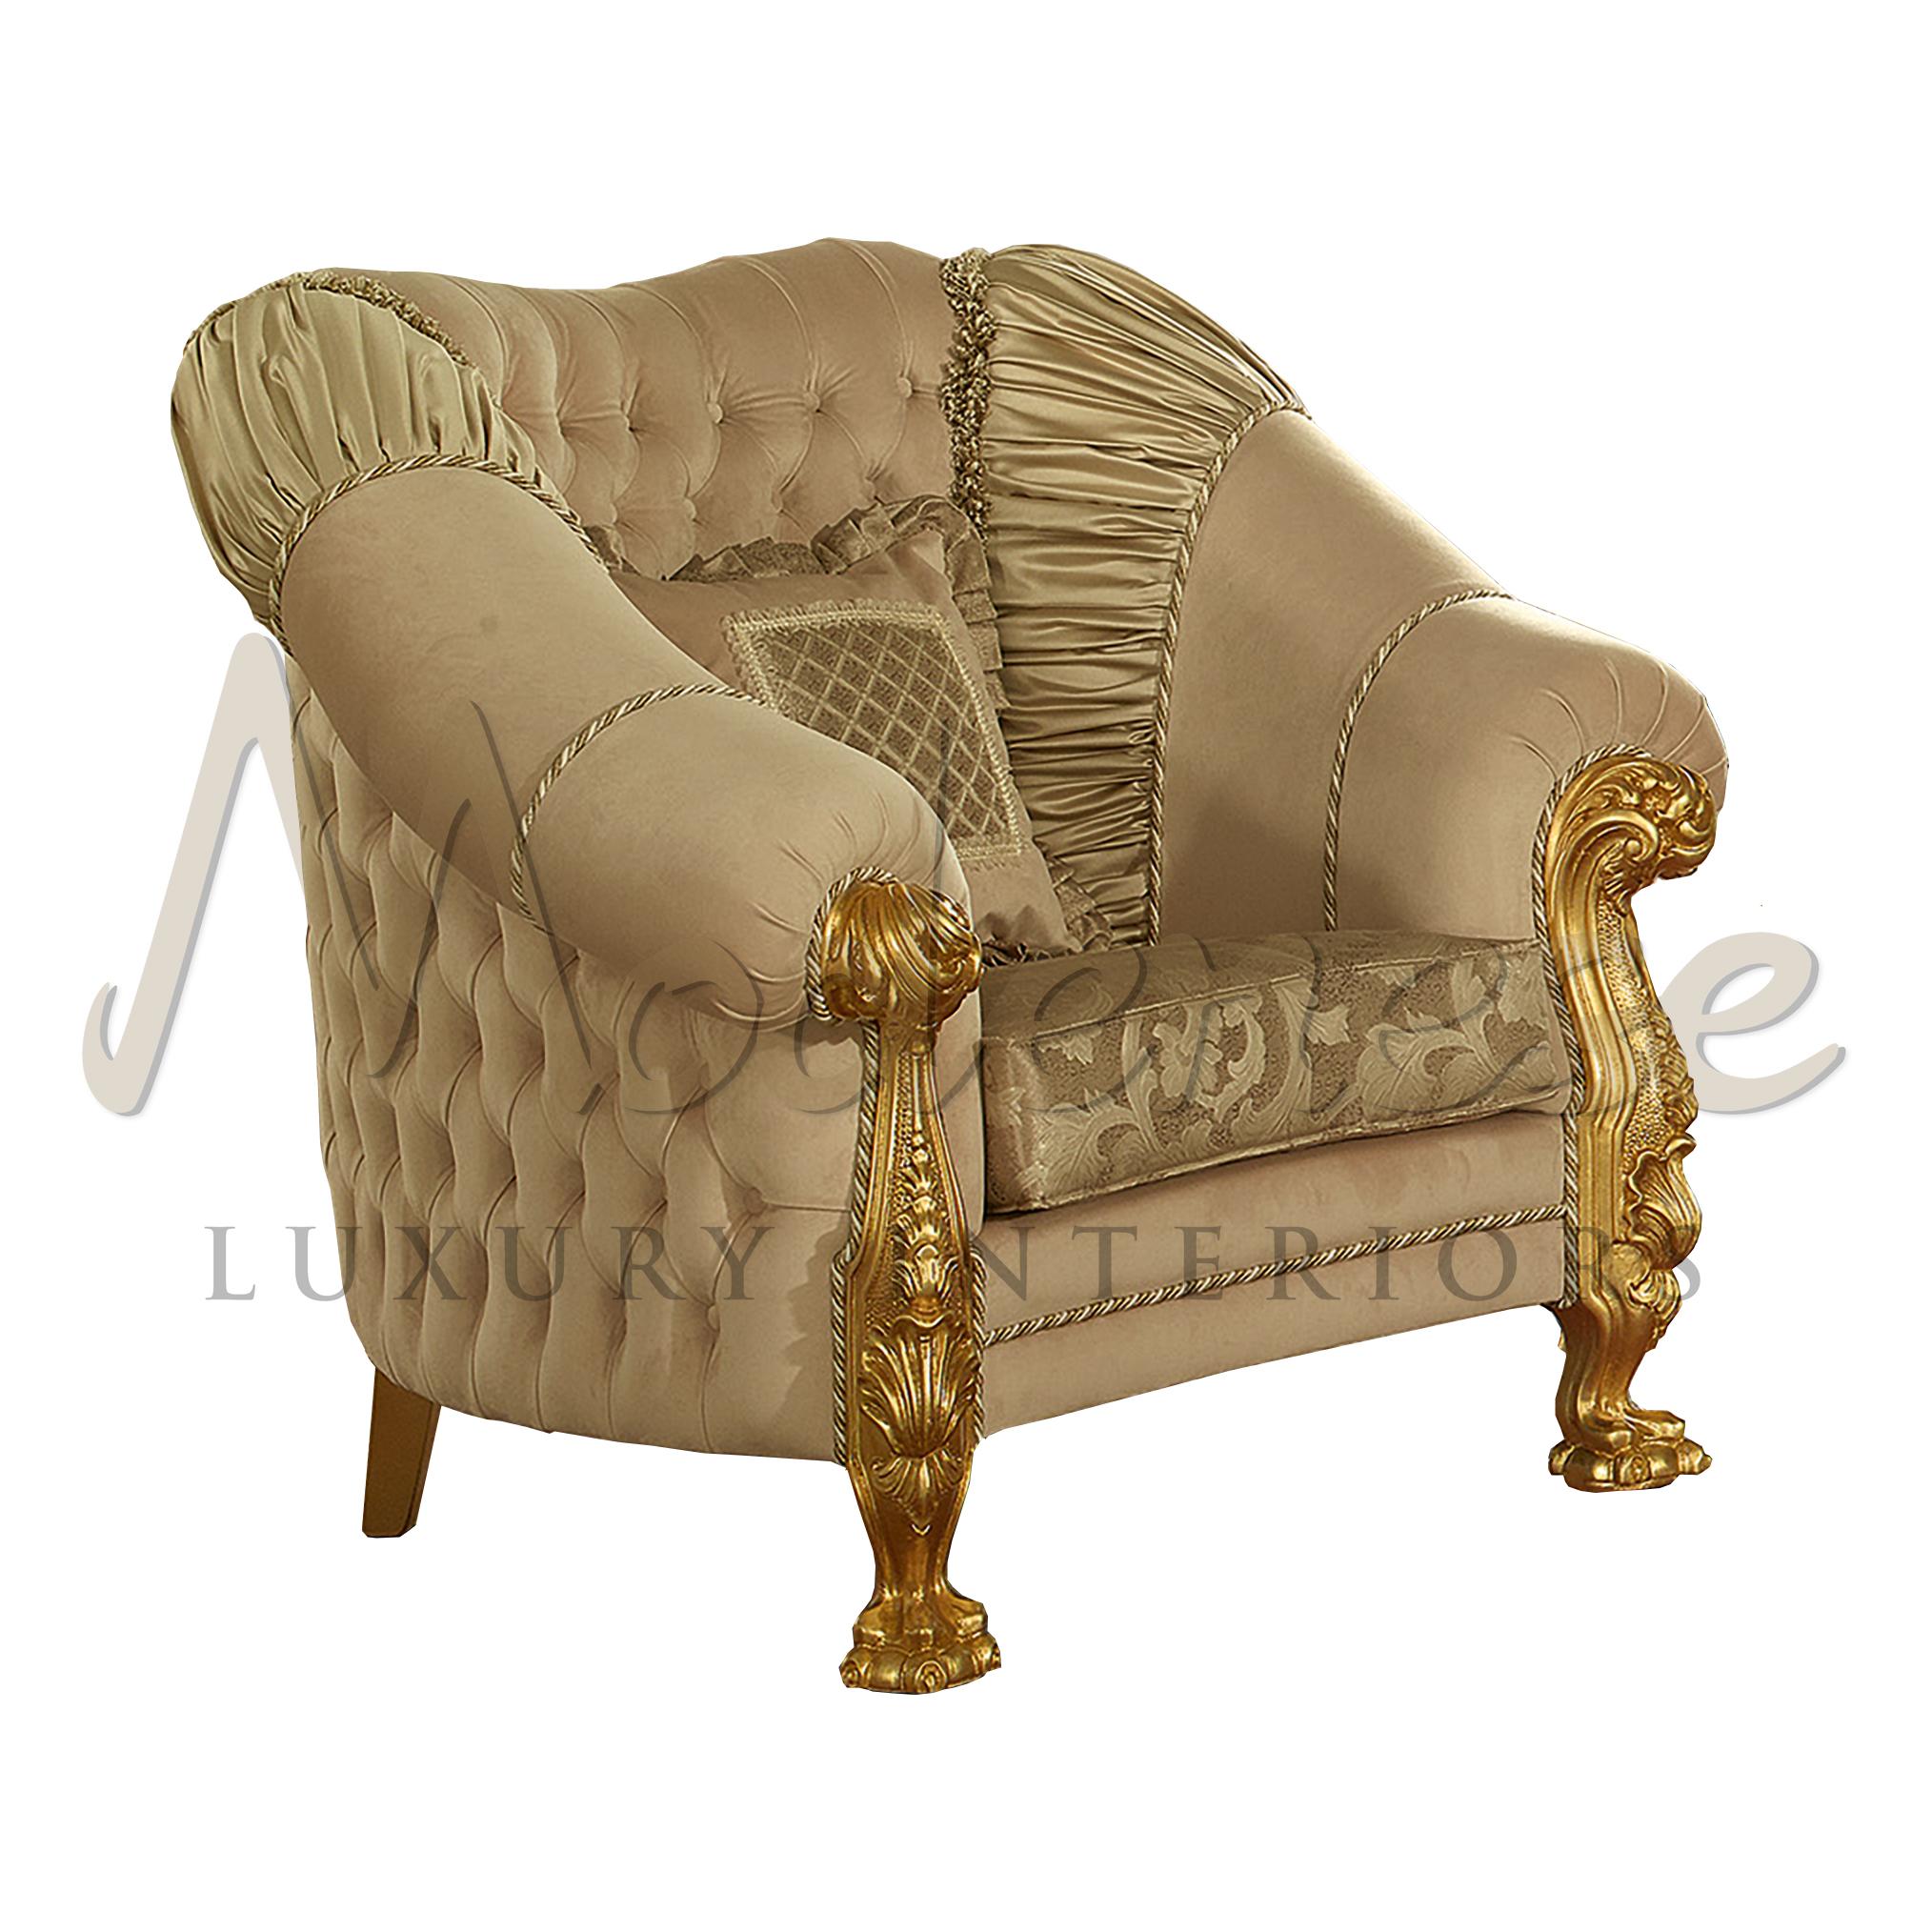 Fauteuil capitonné de luxe avec un design unique sculpté de pattes de lion. Les sièges sont en tissu mixte et en cuir. Le capitonnage est élégant dans sa forme, mais aussi très confortable dans sa forme autour de la partie extérieure et intérieure